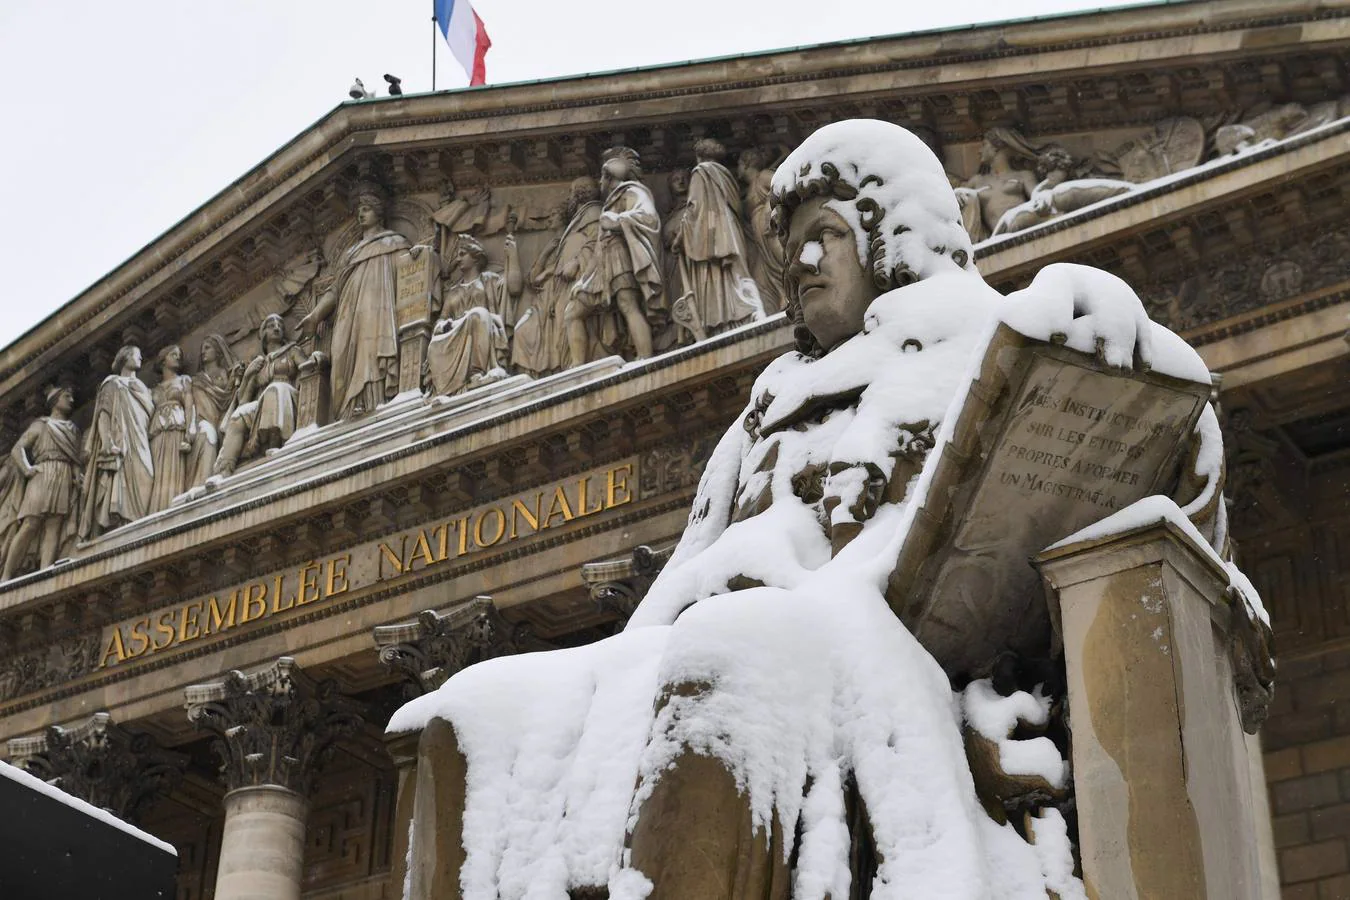 La capital francesa muestra estos días su imagen más invernal. Lugares emblemáticos como la Torre Eiffel, la Basílica del Sagrado Corazón, Versalles o los Campos Elíseos se han visto cubiertos por un temporal de nieve sin precedentes.